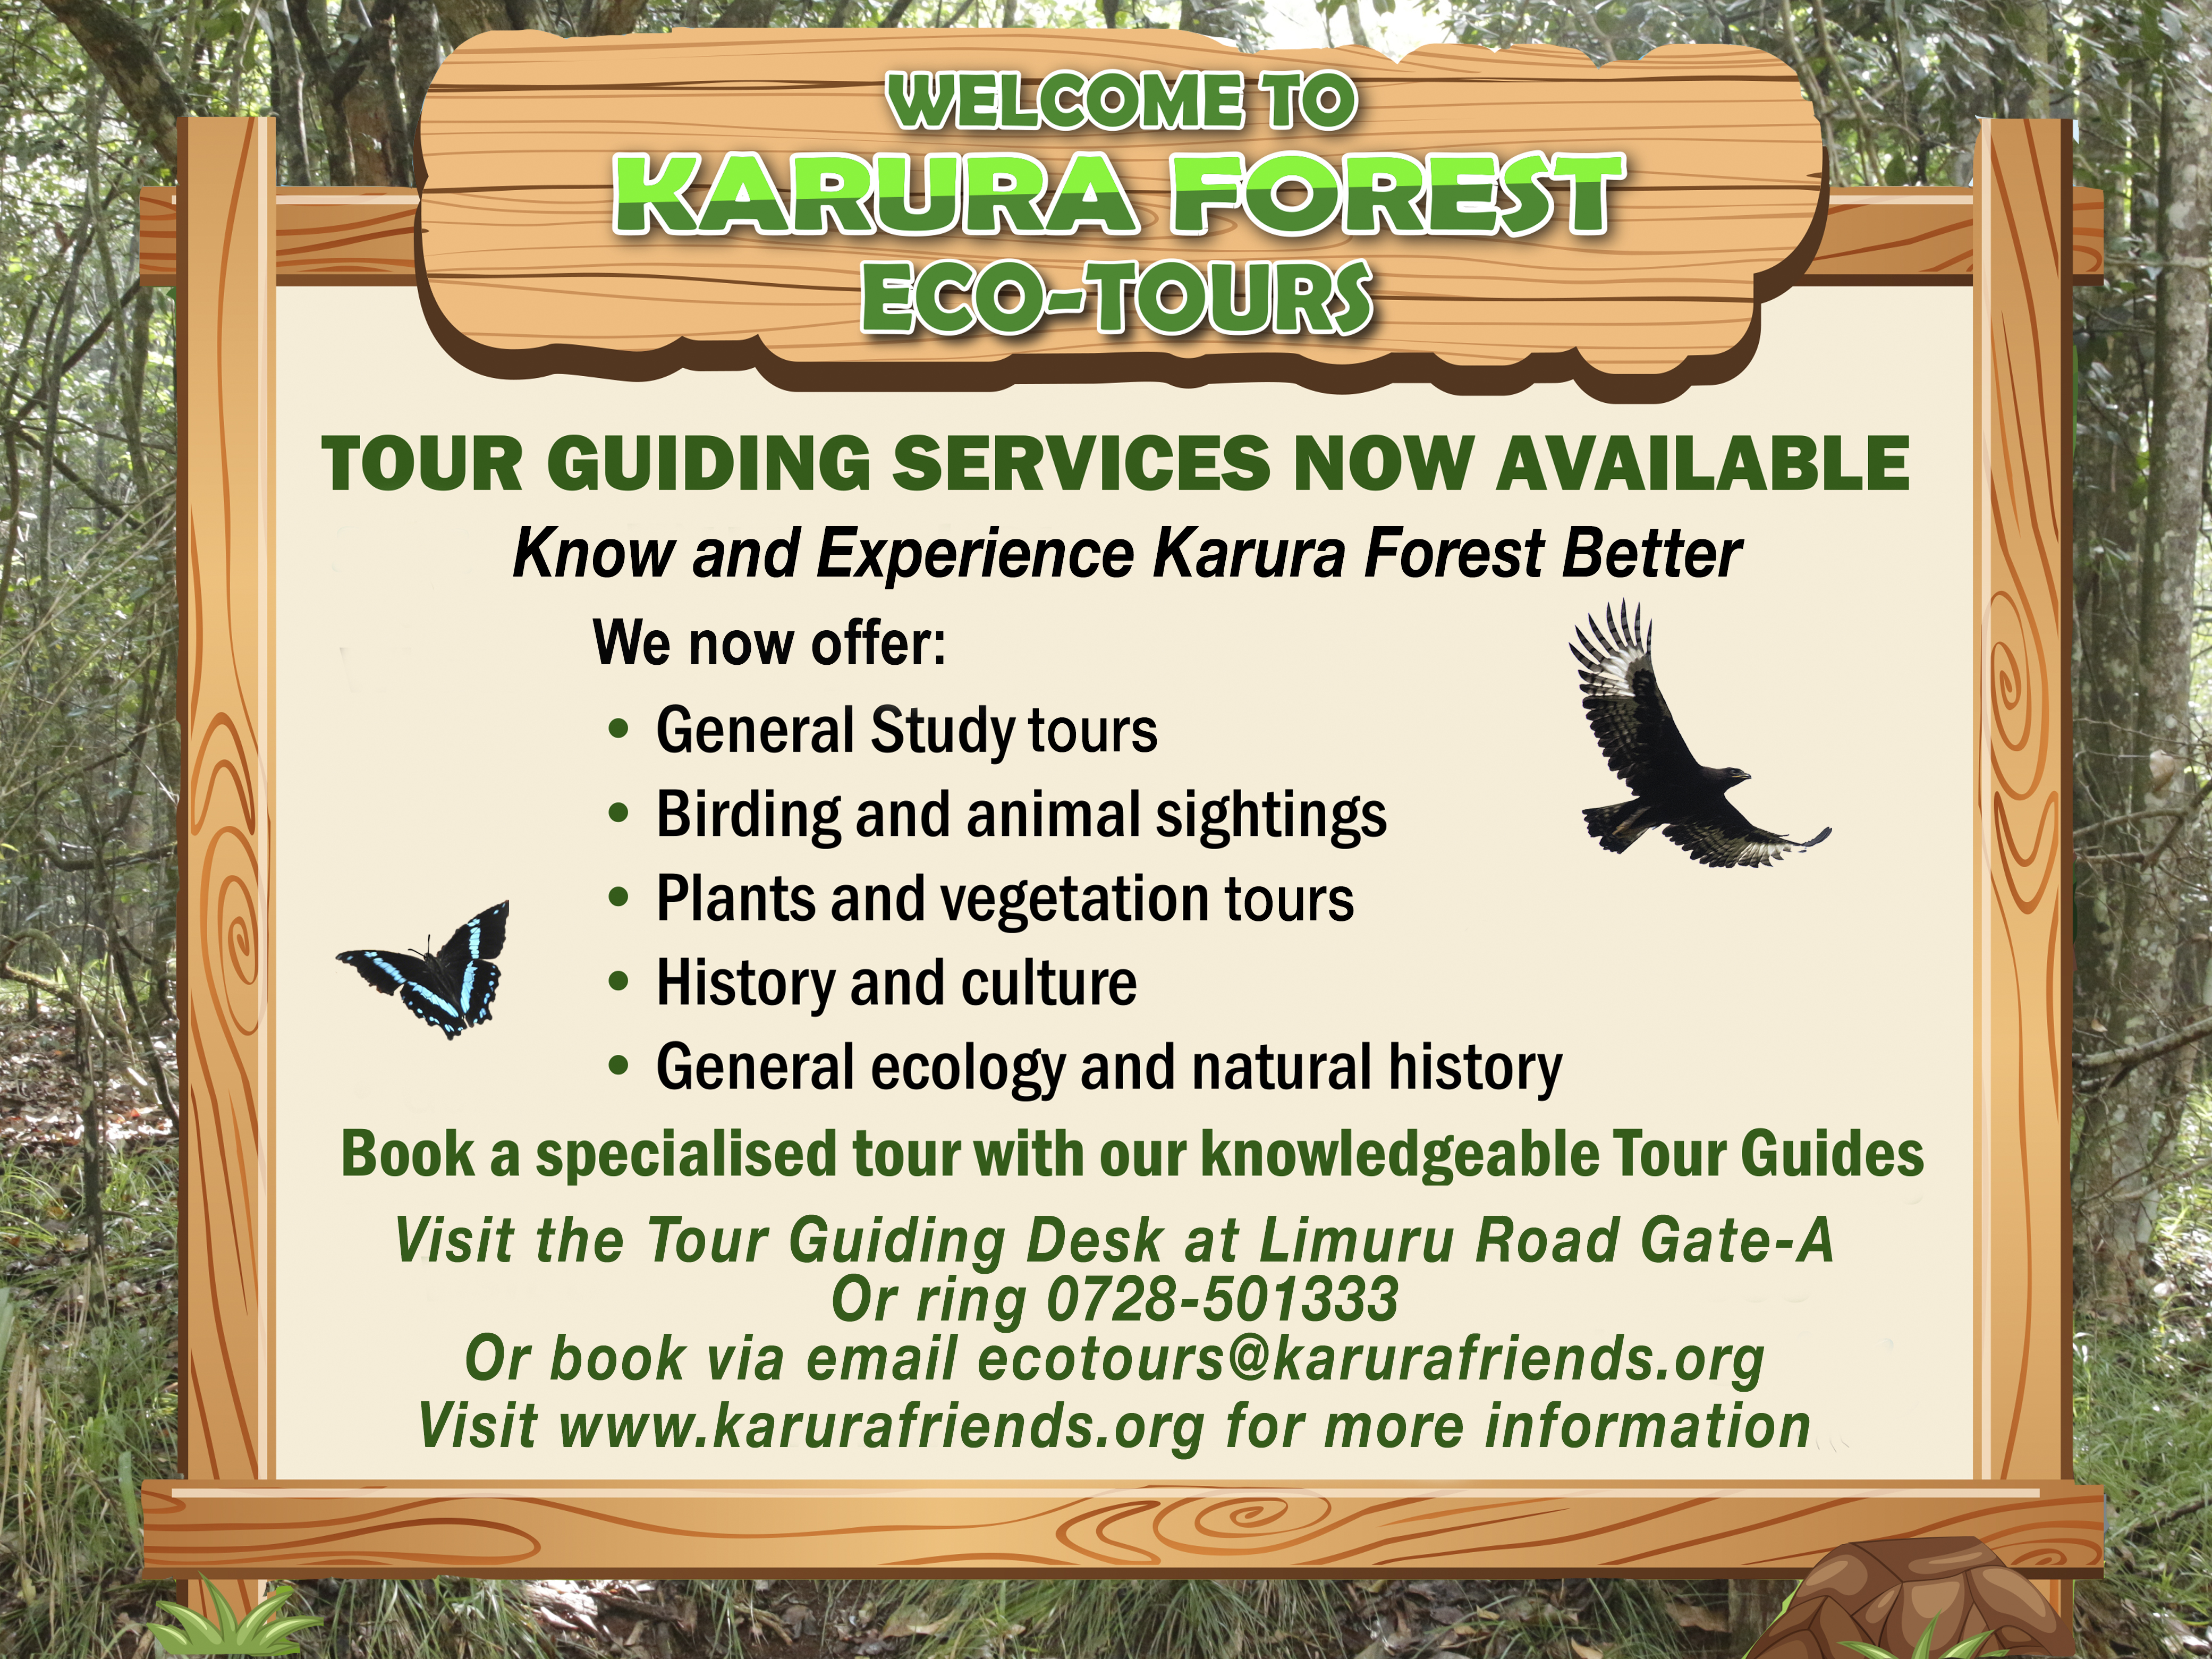 Karura Forest Eco-Tours